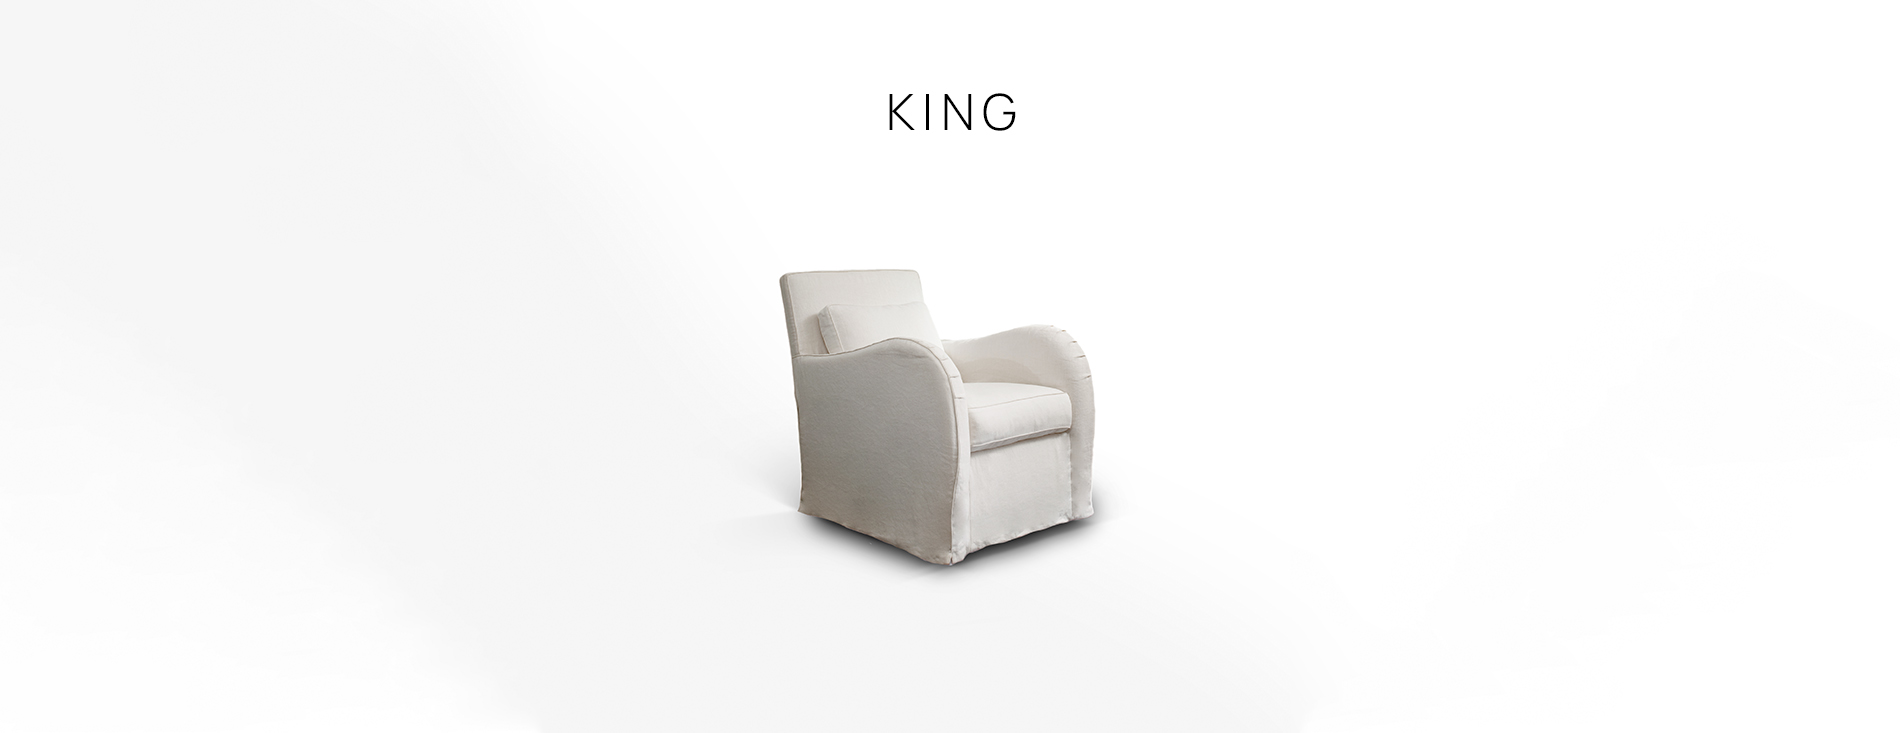 Villevenete King armchair